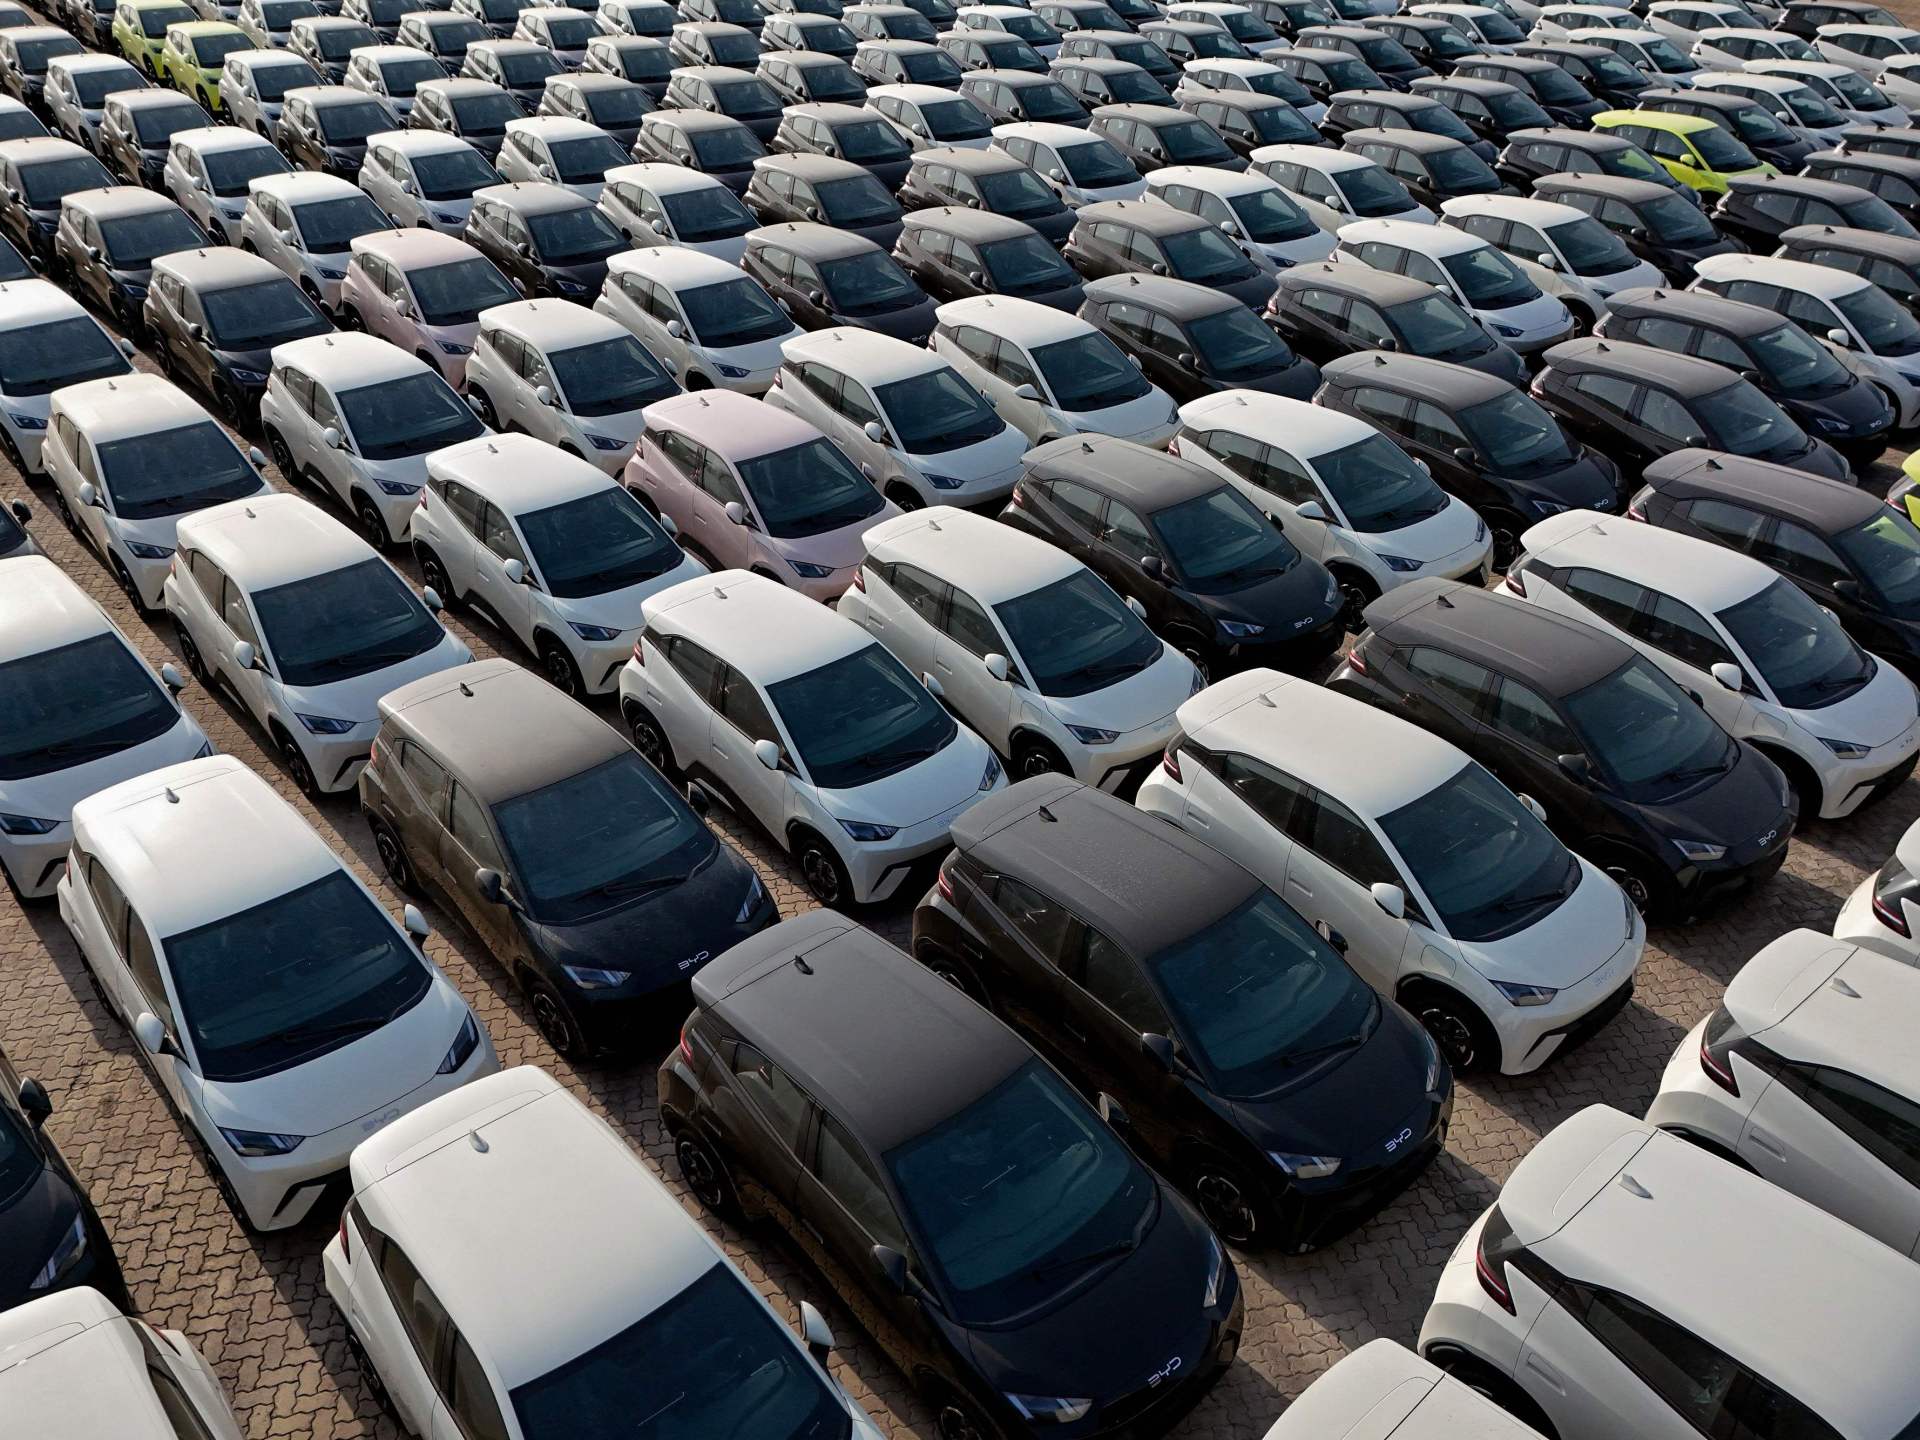 الصين تقود سوق السيارات الكهربائية بالعالم | اقتصاد – البوكس نيوز